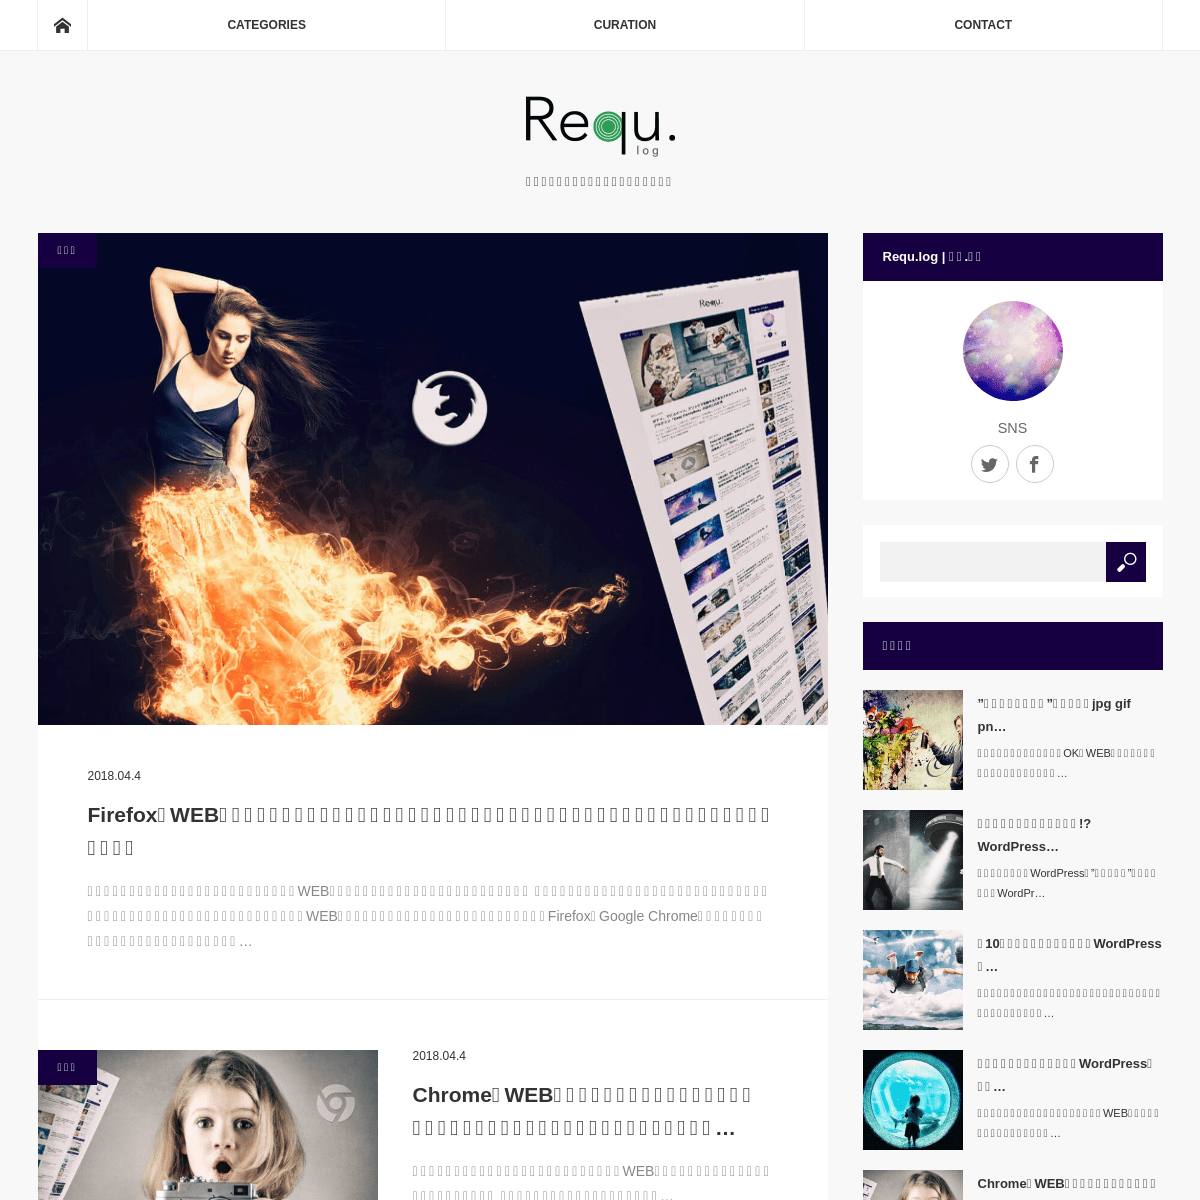 A complete backup of requlog.com